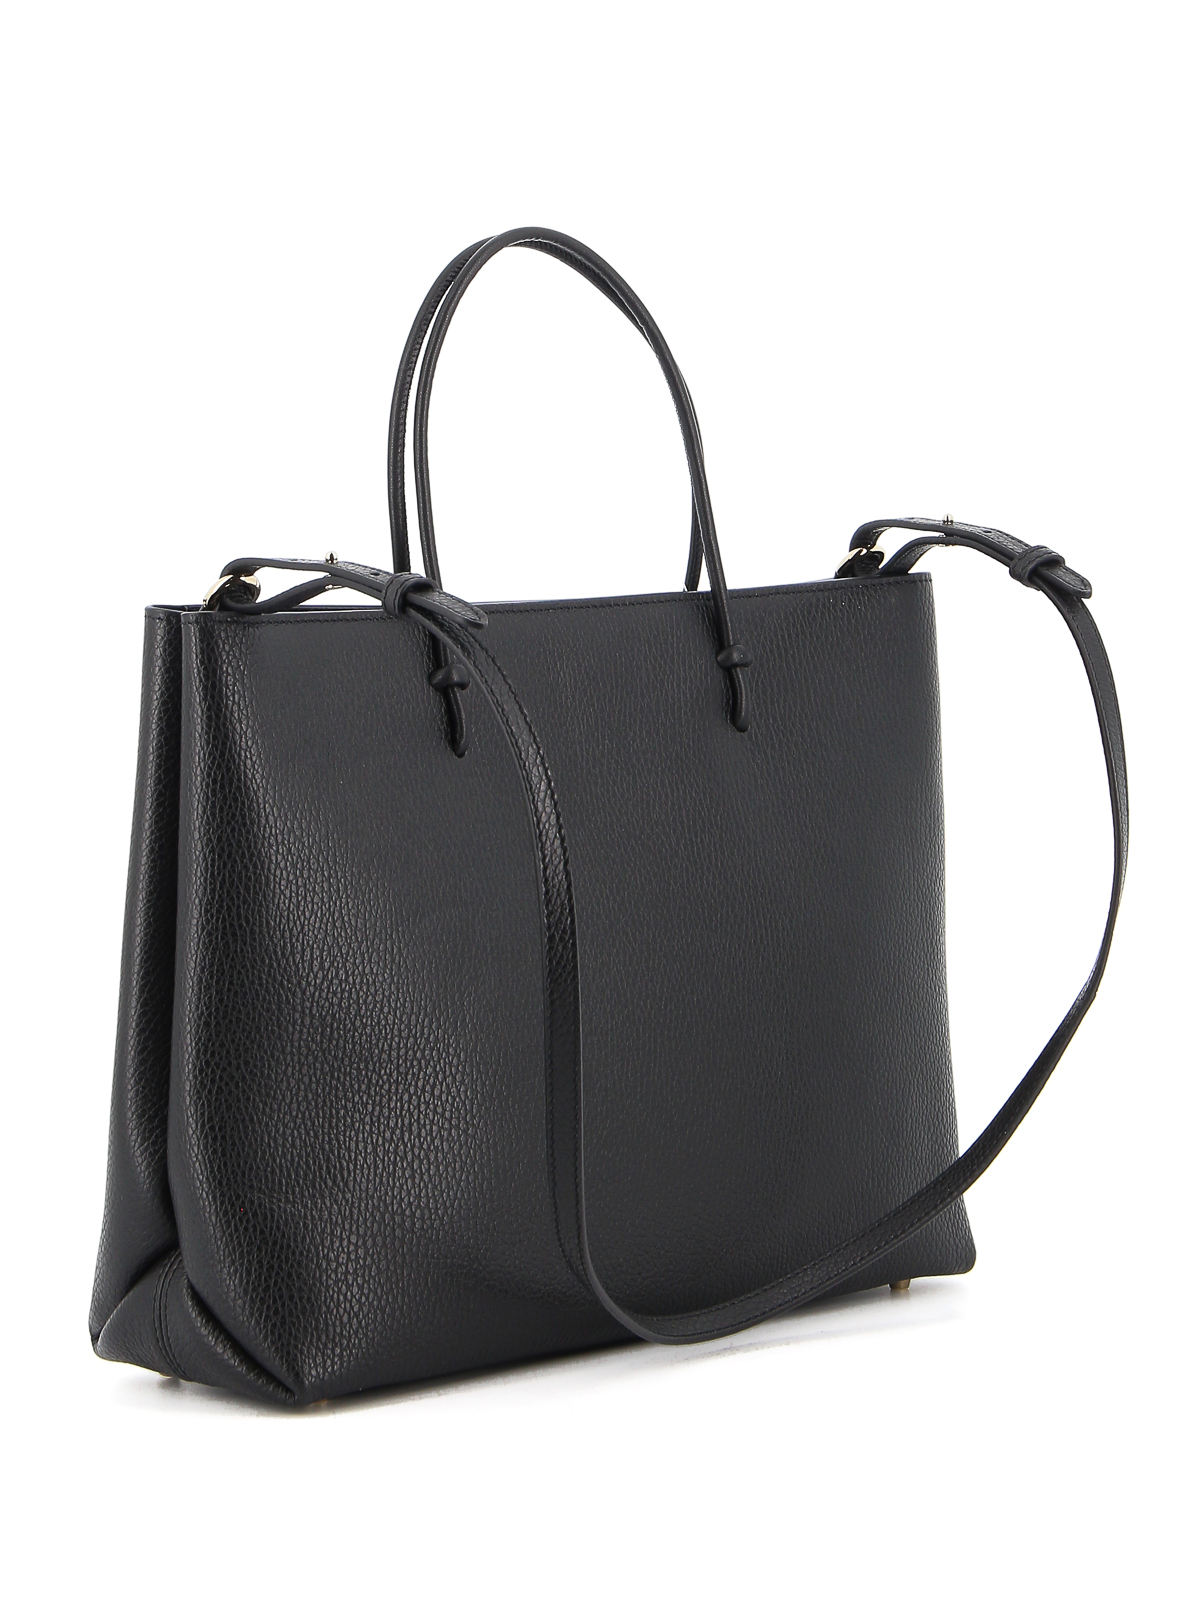 Totes bags Furla - Essential medium grainy leather tote ...